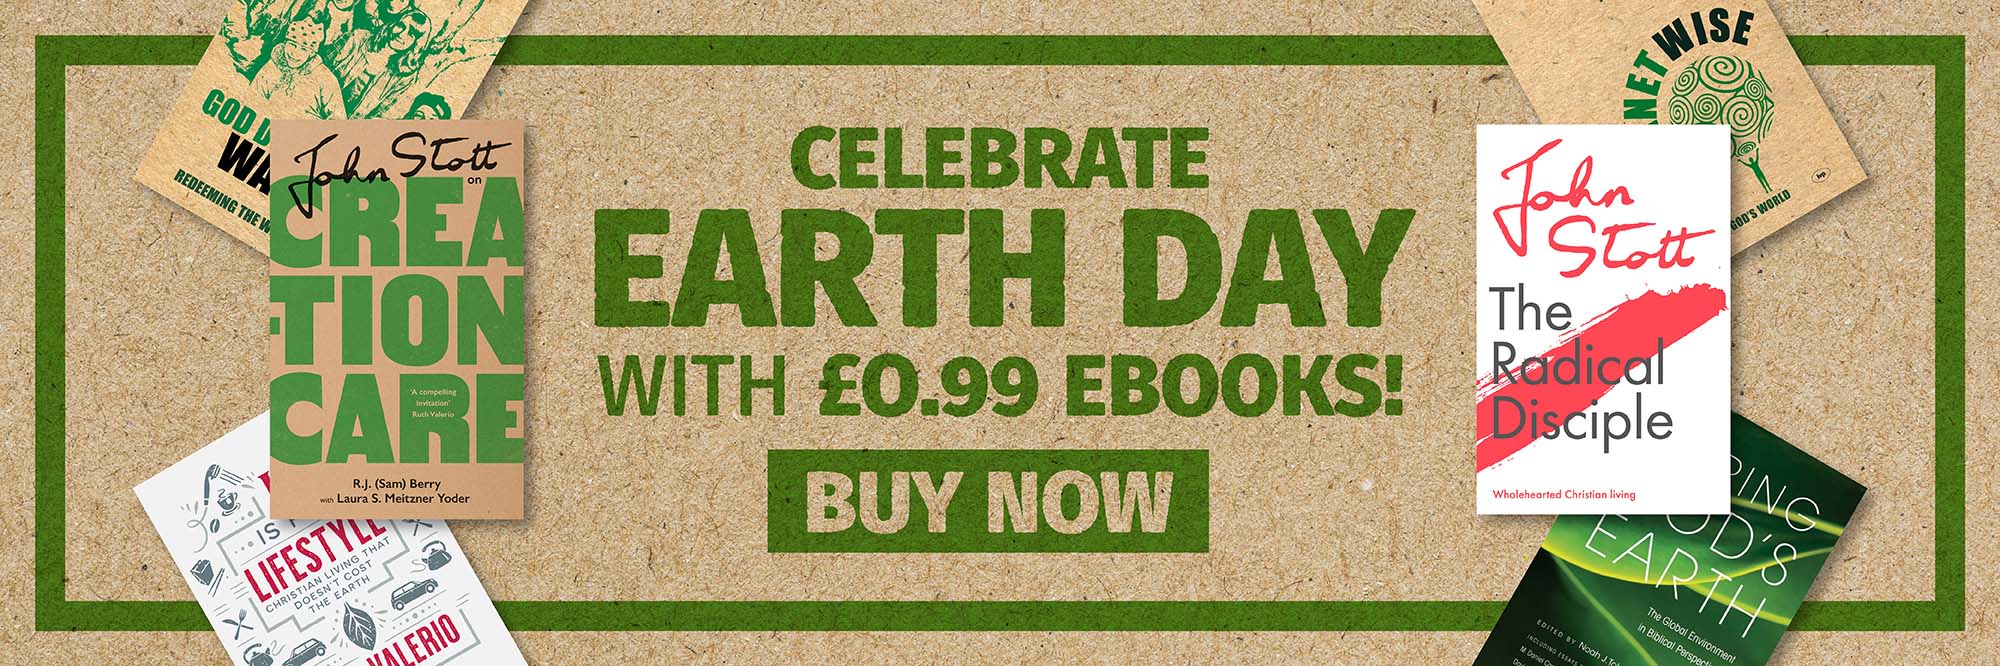 Earth Day Books John Stott